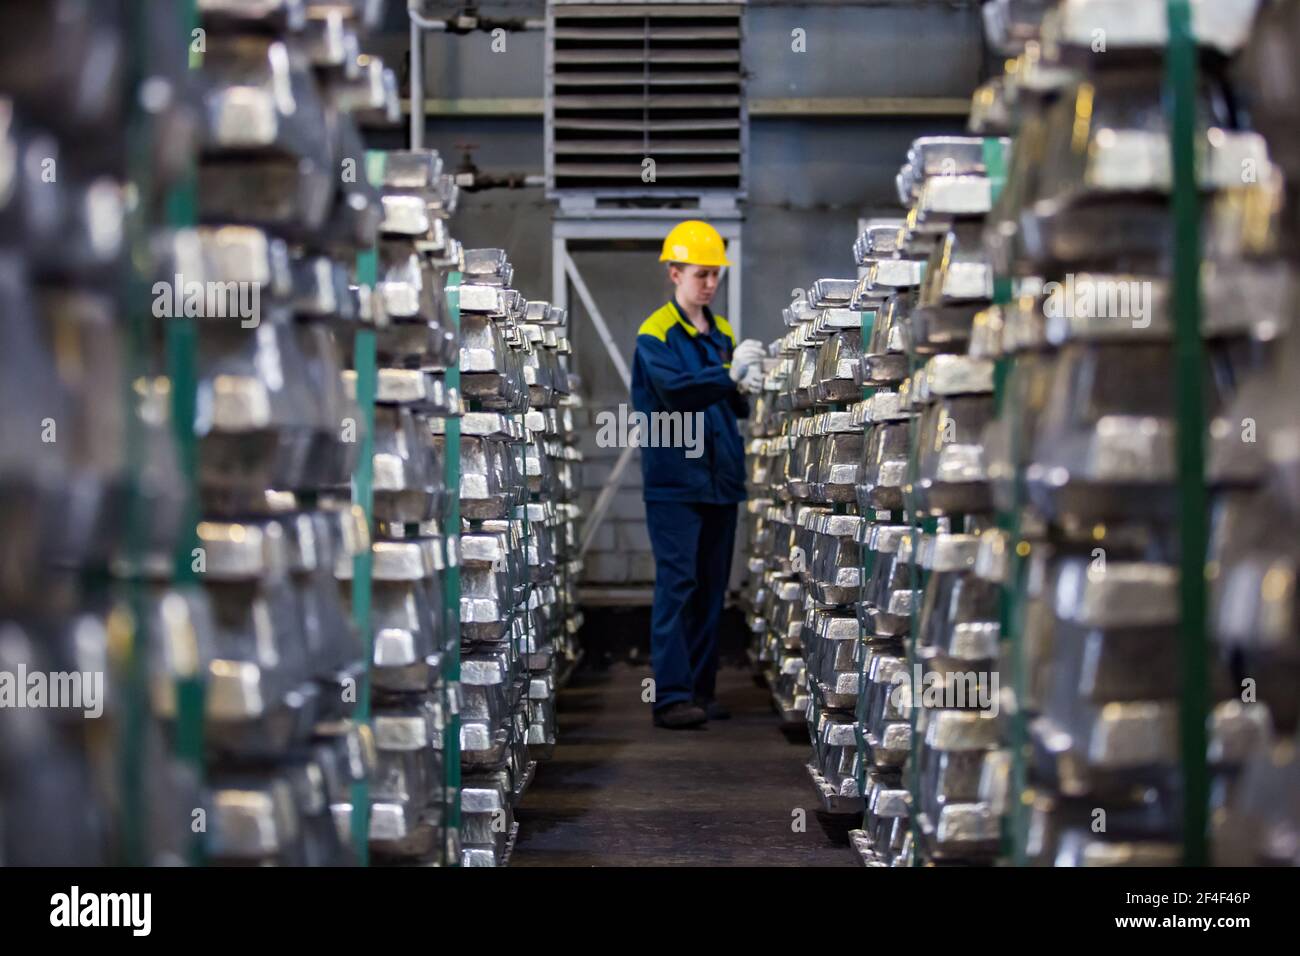 Pavlodar, Kazakhstan - mai 05 2012 : usine d'électrolyse de l'aluminium. Entrepôt de lingots prêts. Femme travailleuse en casque de sécurité jaune et en vêtement de travail bleu. Concentrez-vous sur moi Banque D'Images